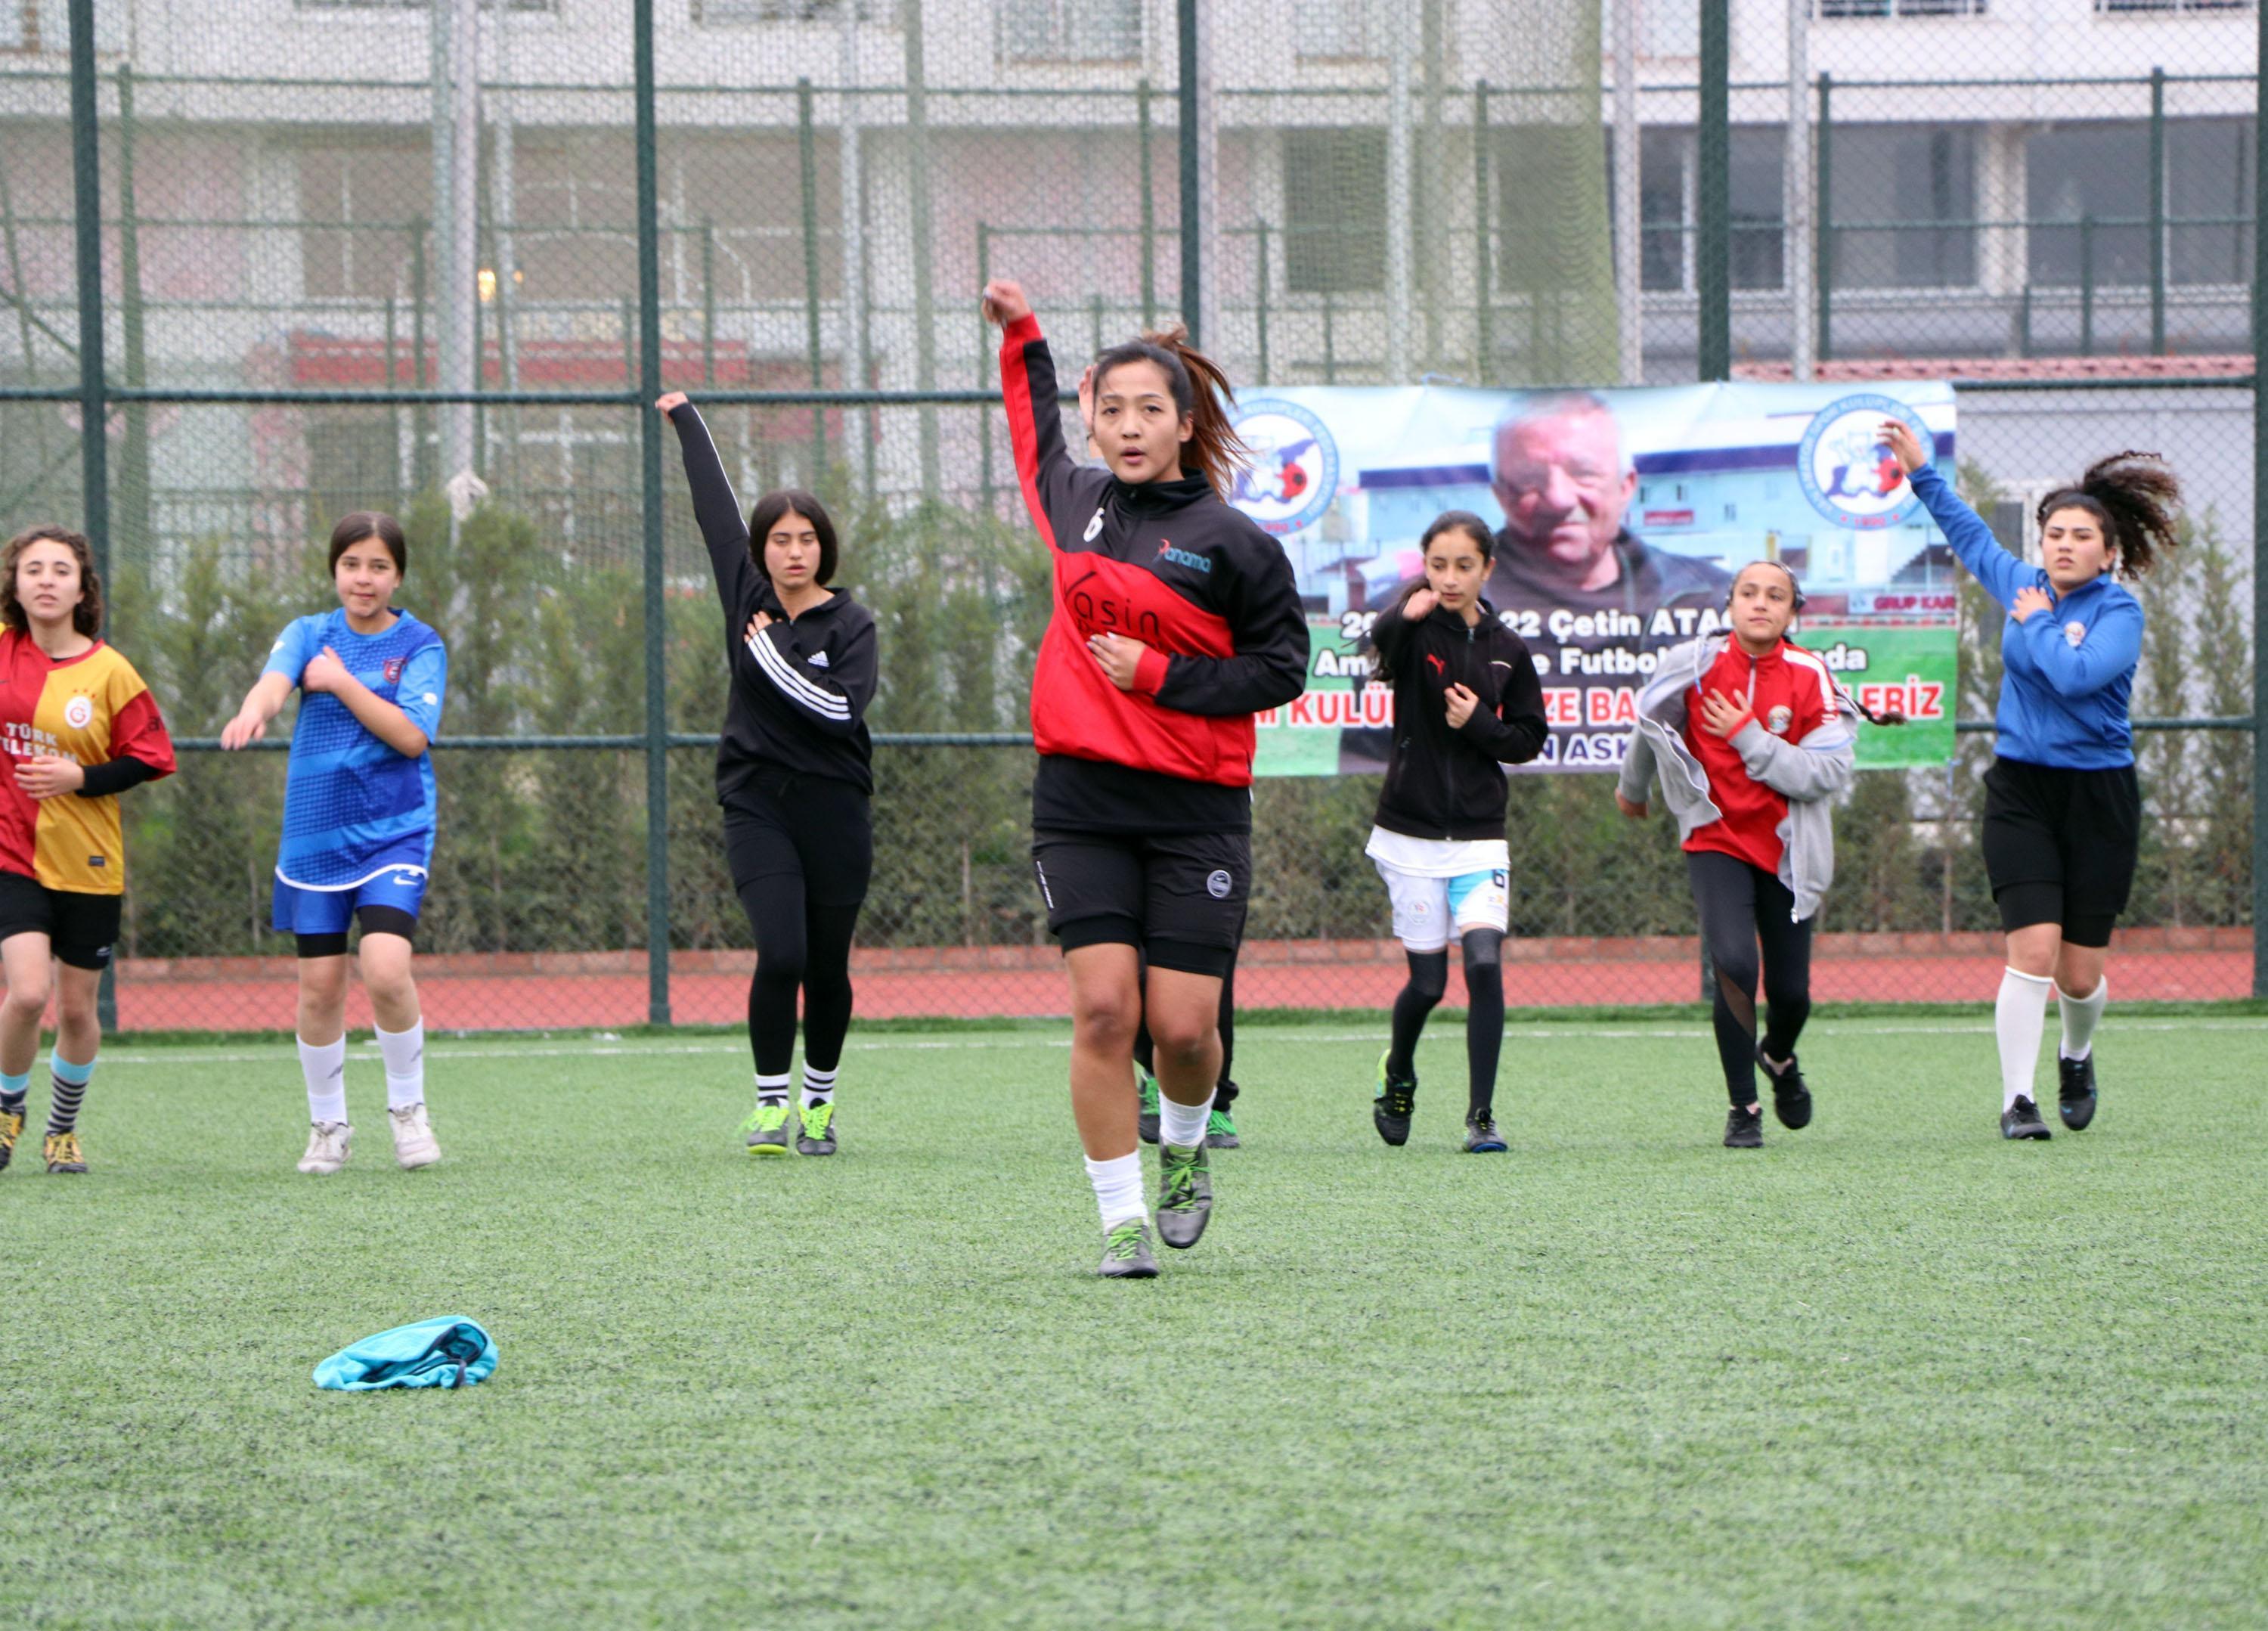 Vangücü Kadın Futbol Takımı, Afganistanlı antrenöre emanet